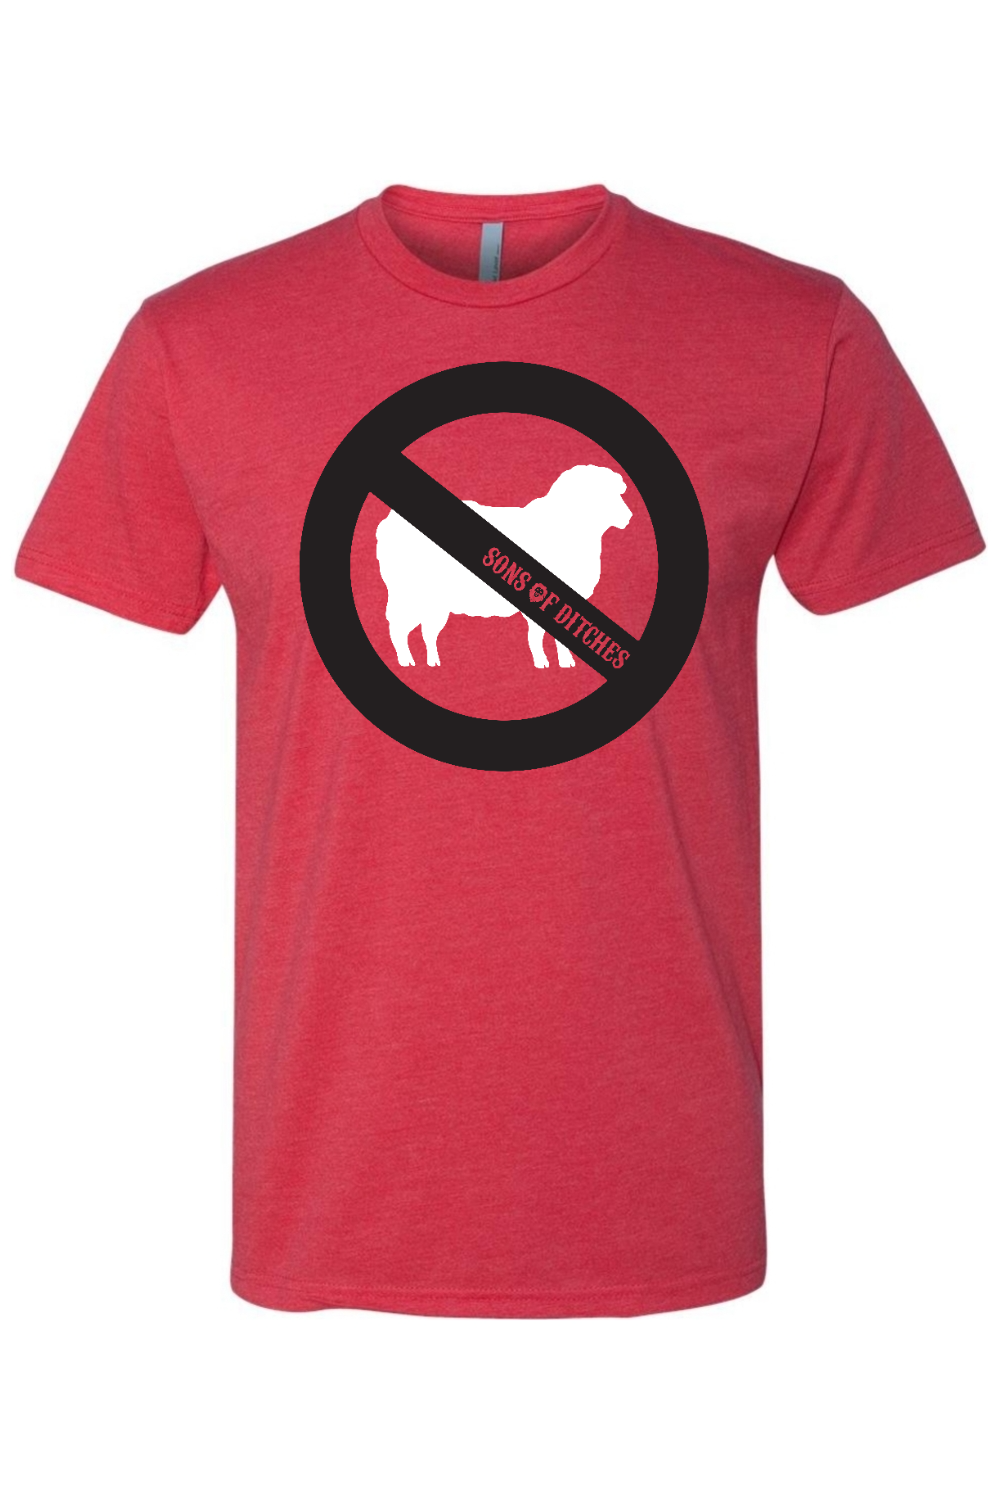 New No Sheep T-shirt - Red